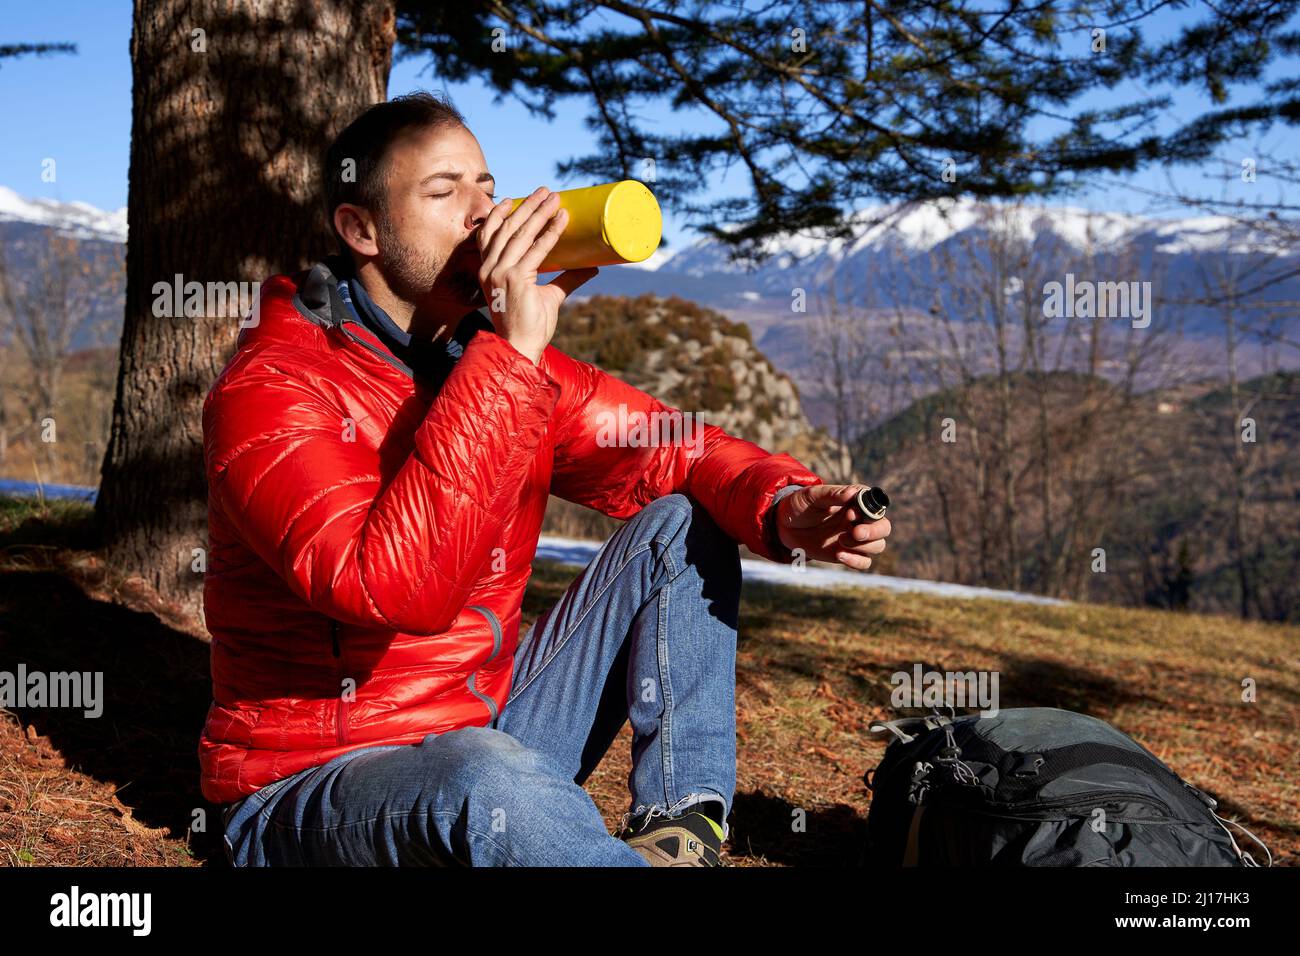 Homme buvant de l'eau à partir d'une bouteille placée sous l'arbre le jour ensoleillé Banque D'Images